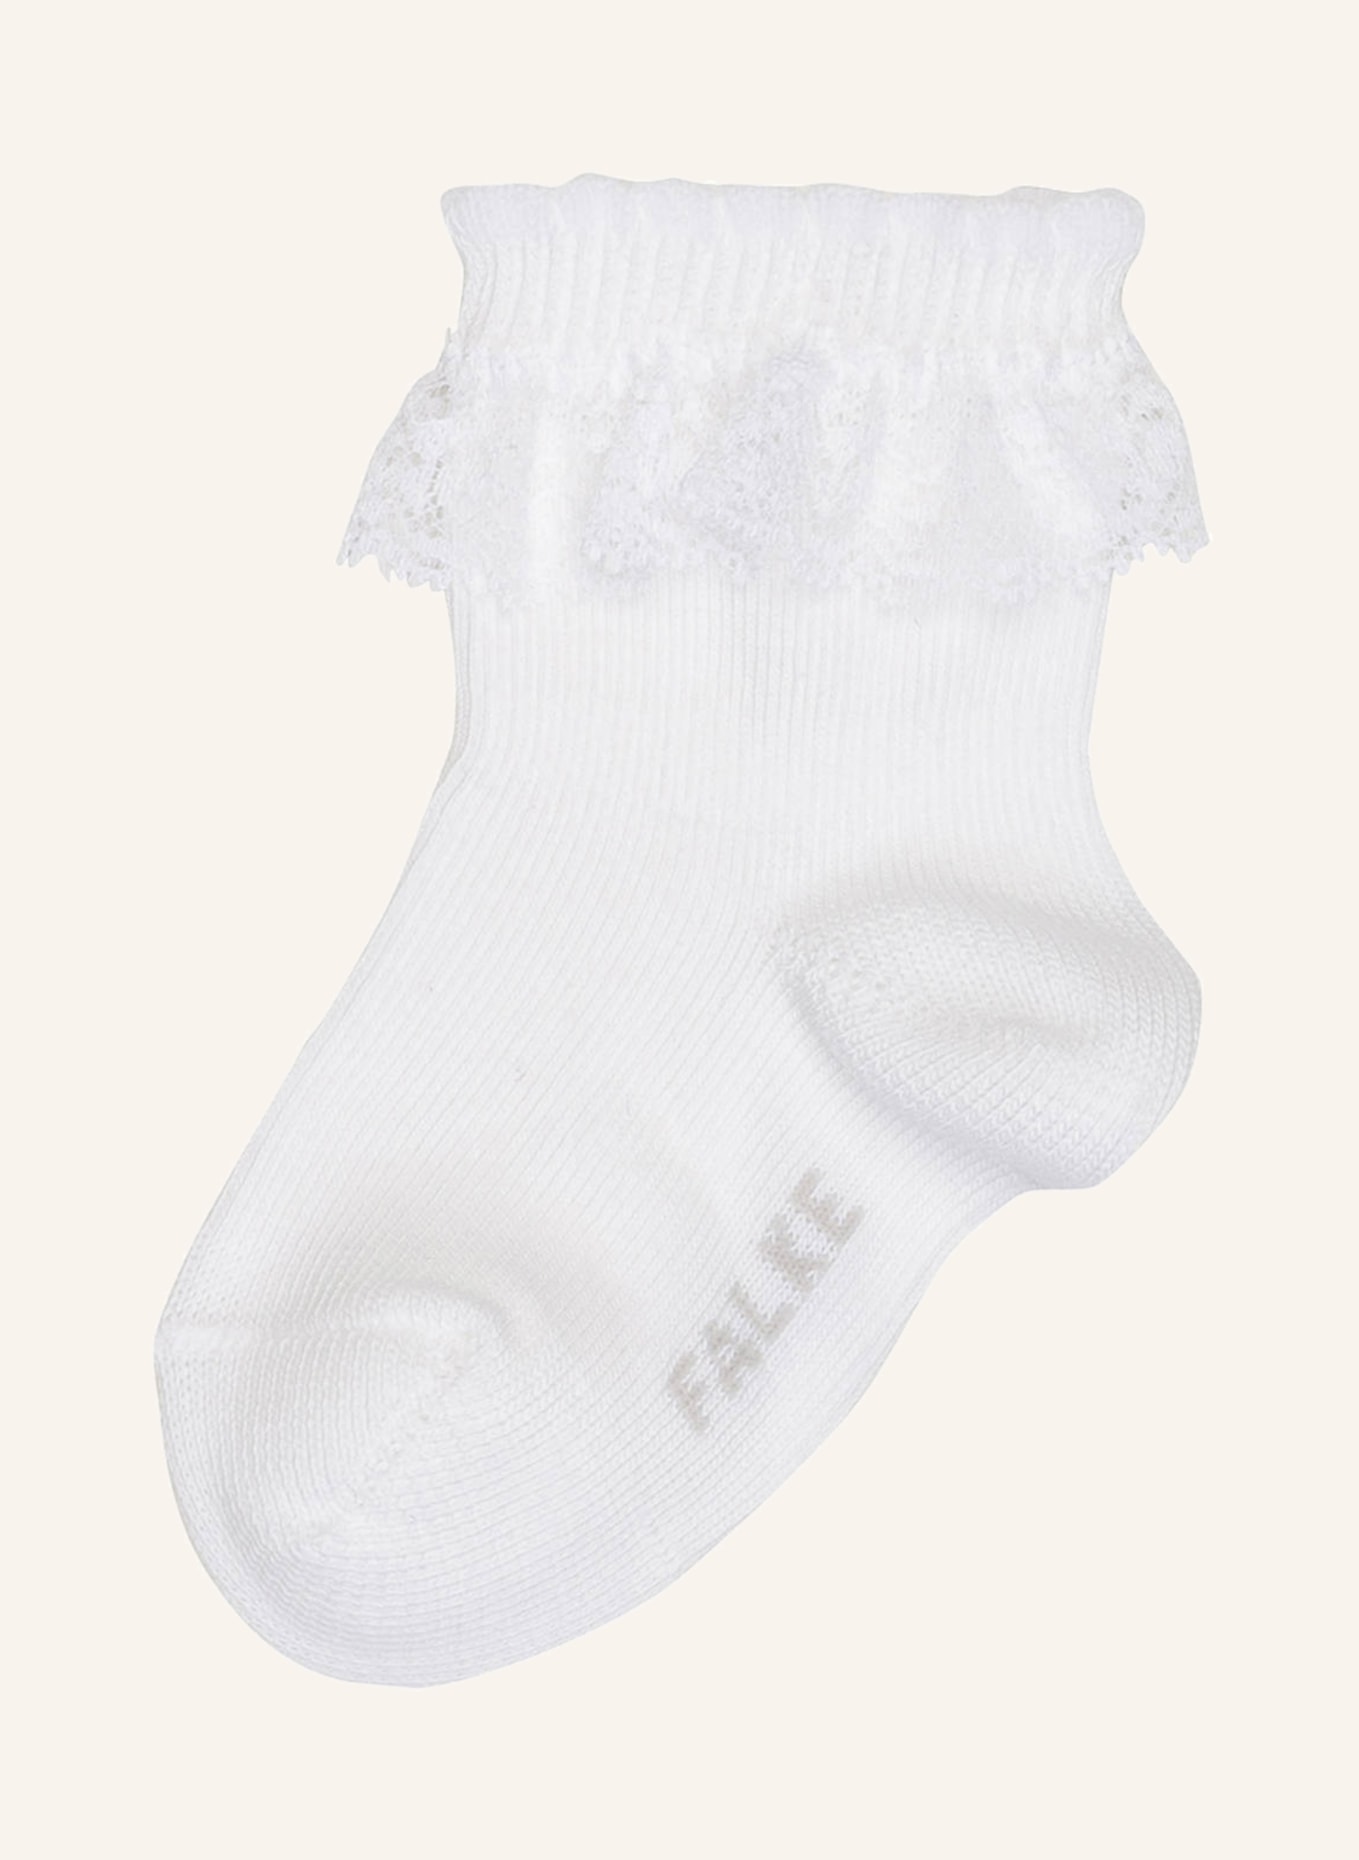 FALKE Socken ROMANTIC LACESO , Farbe: 2000 WHITE (Bild 1)